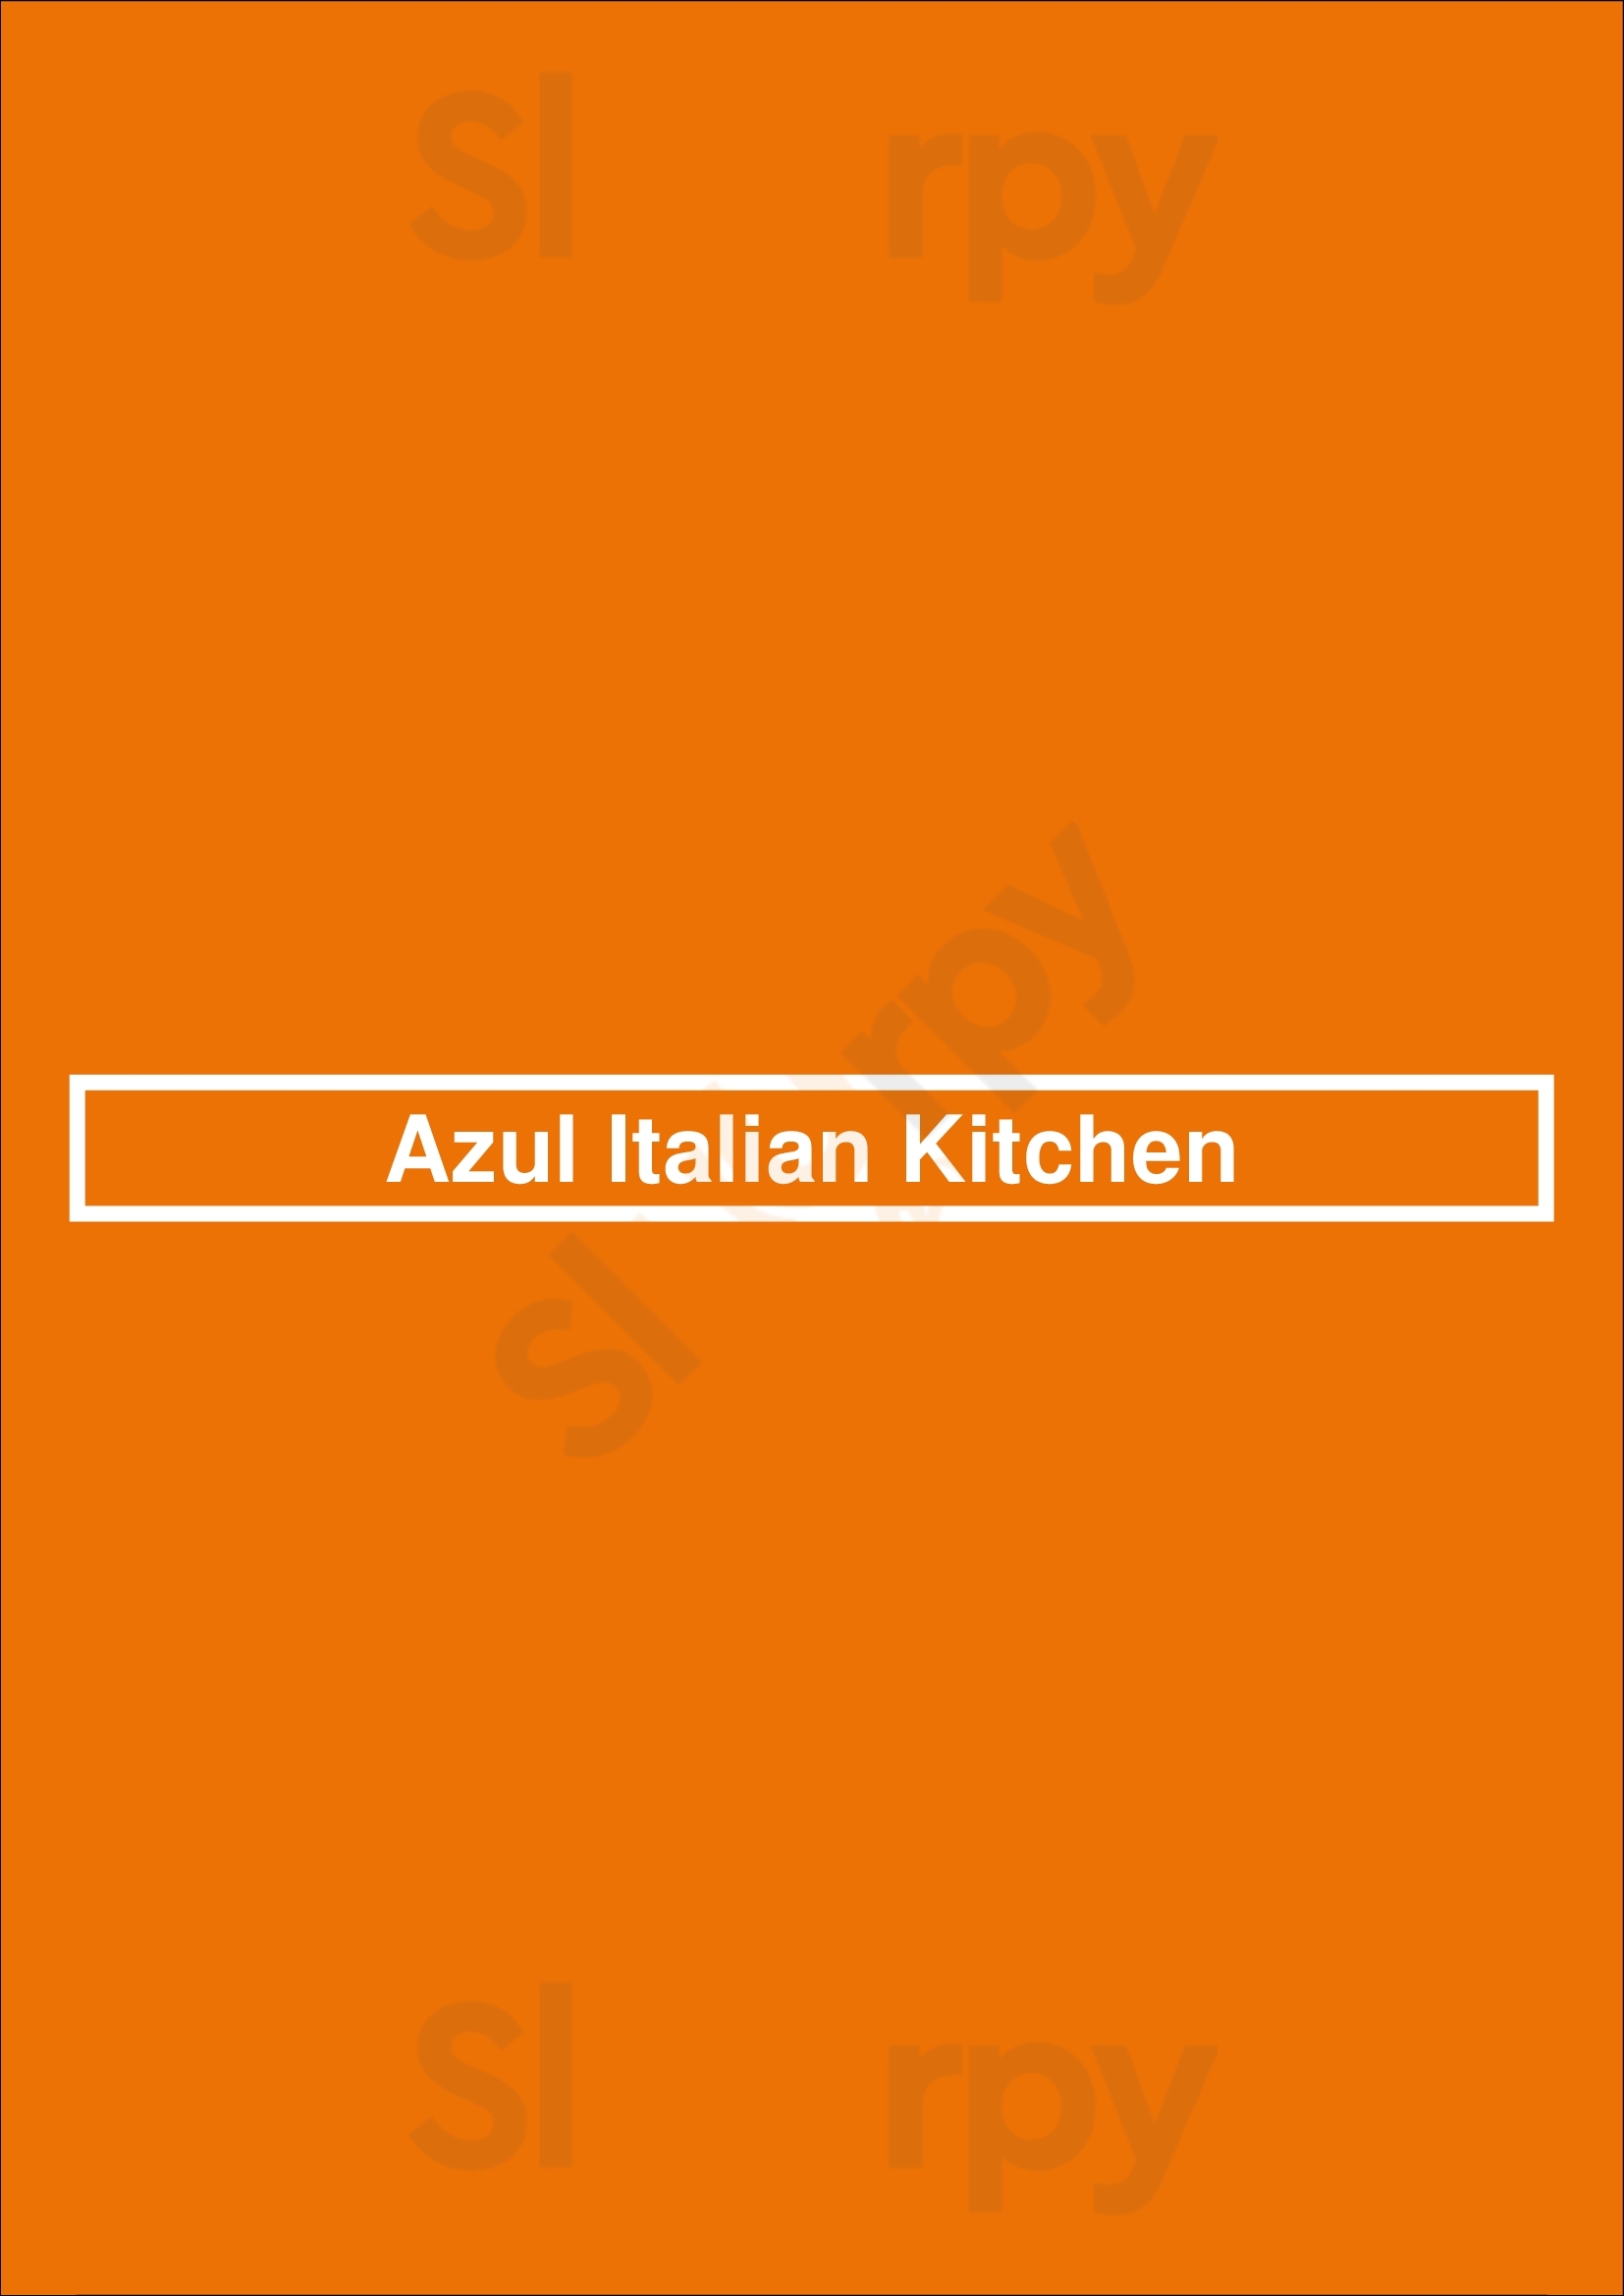 Azul Italian Kitchen Cypress Menu - 1